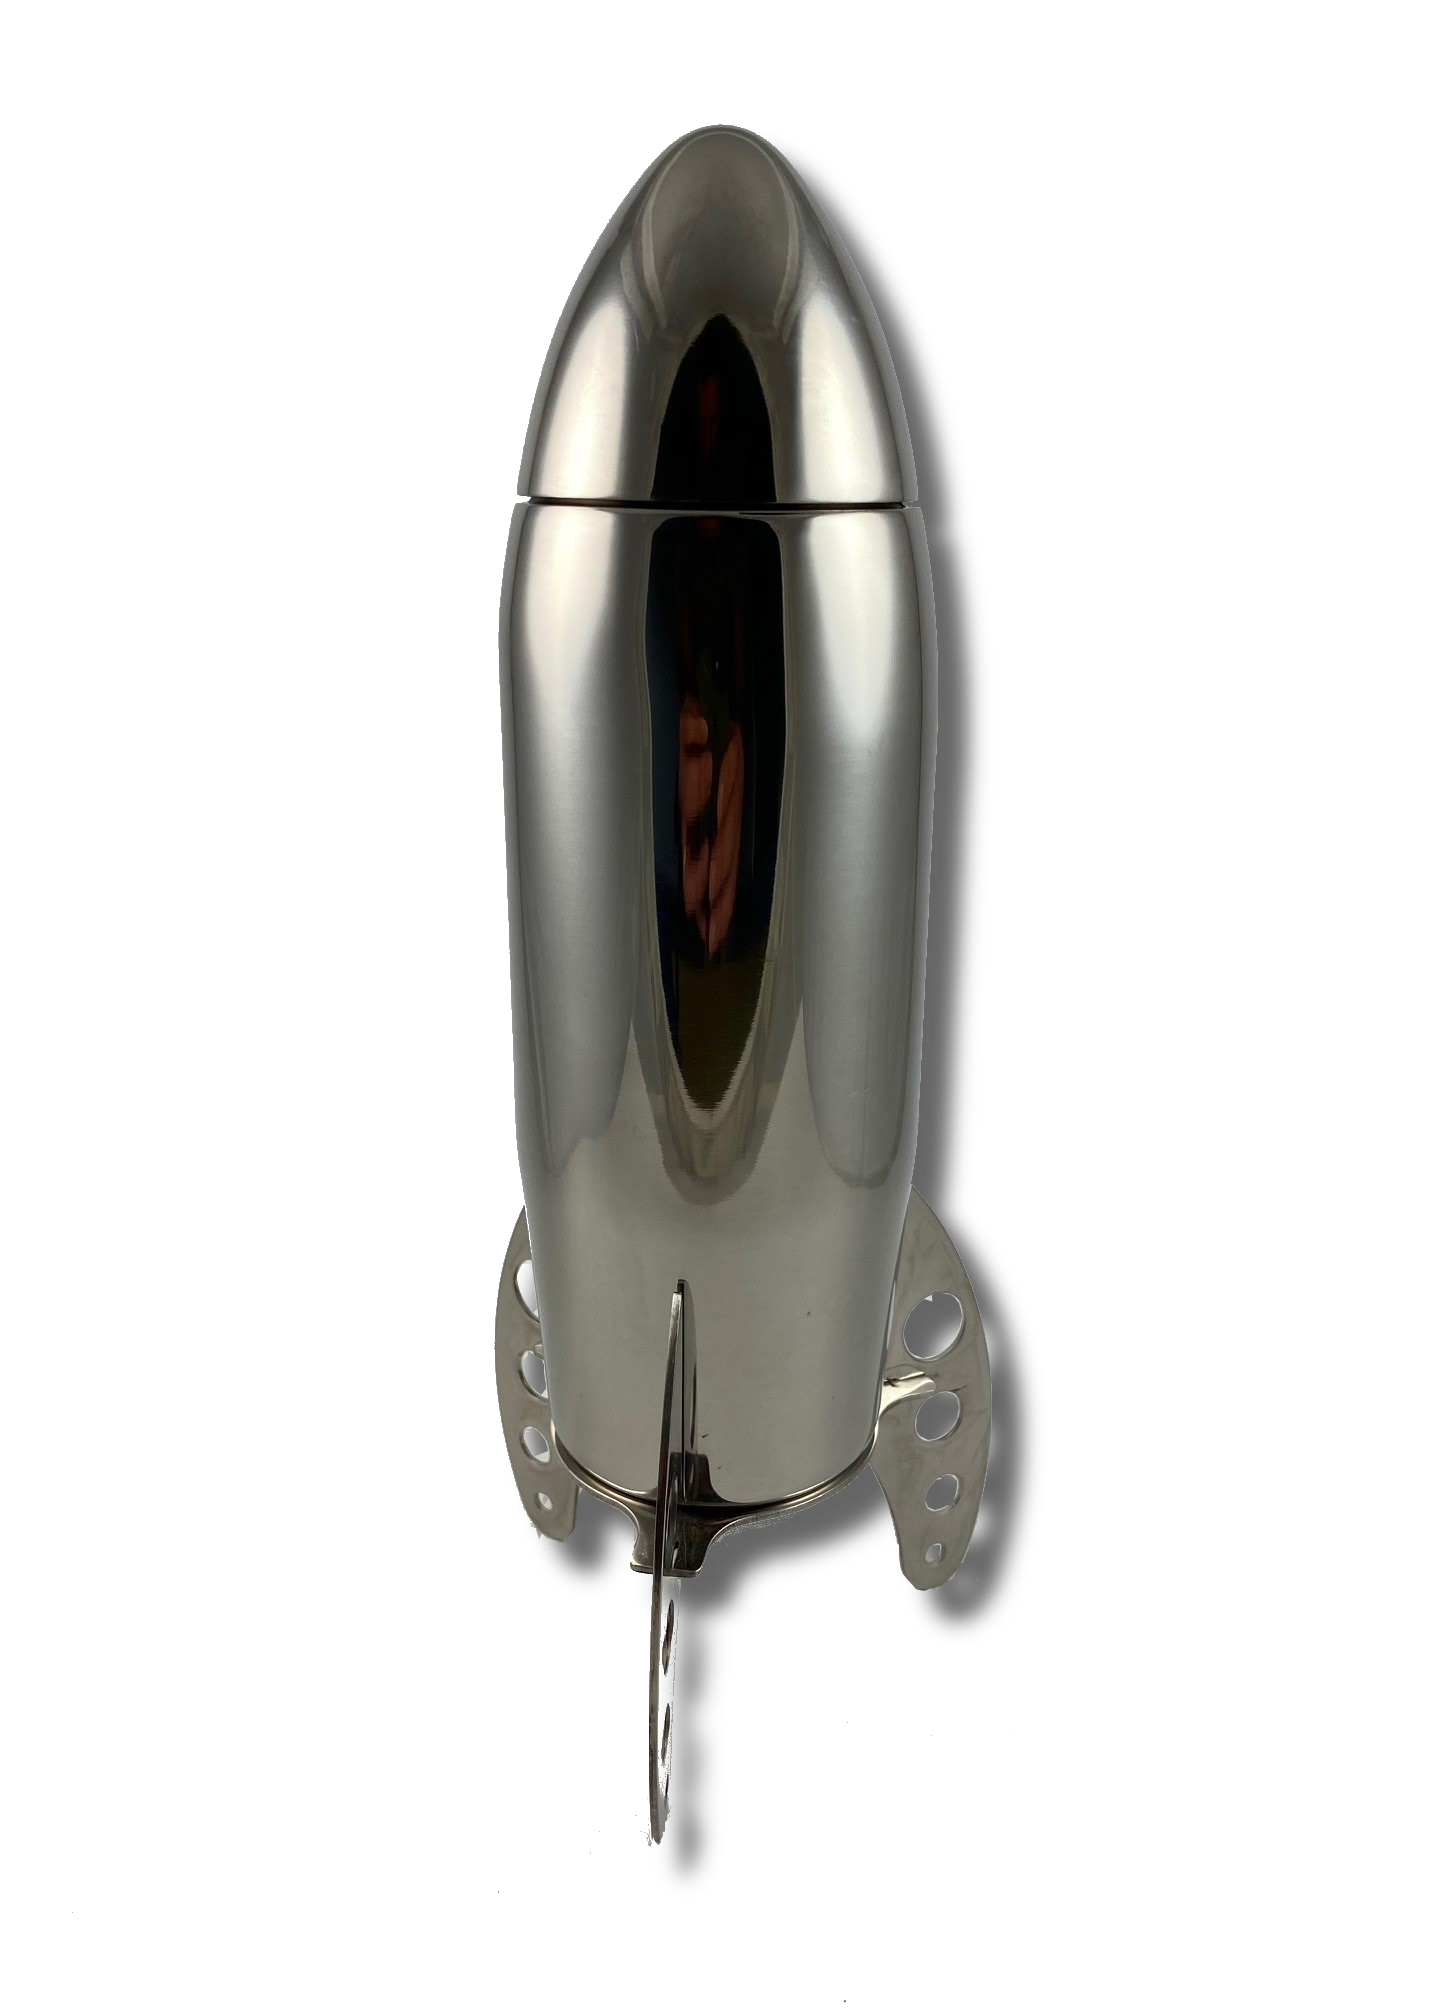 Viski Rocket Cocktail Shaker